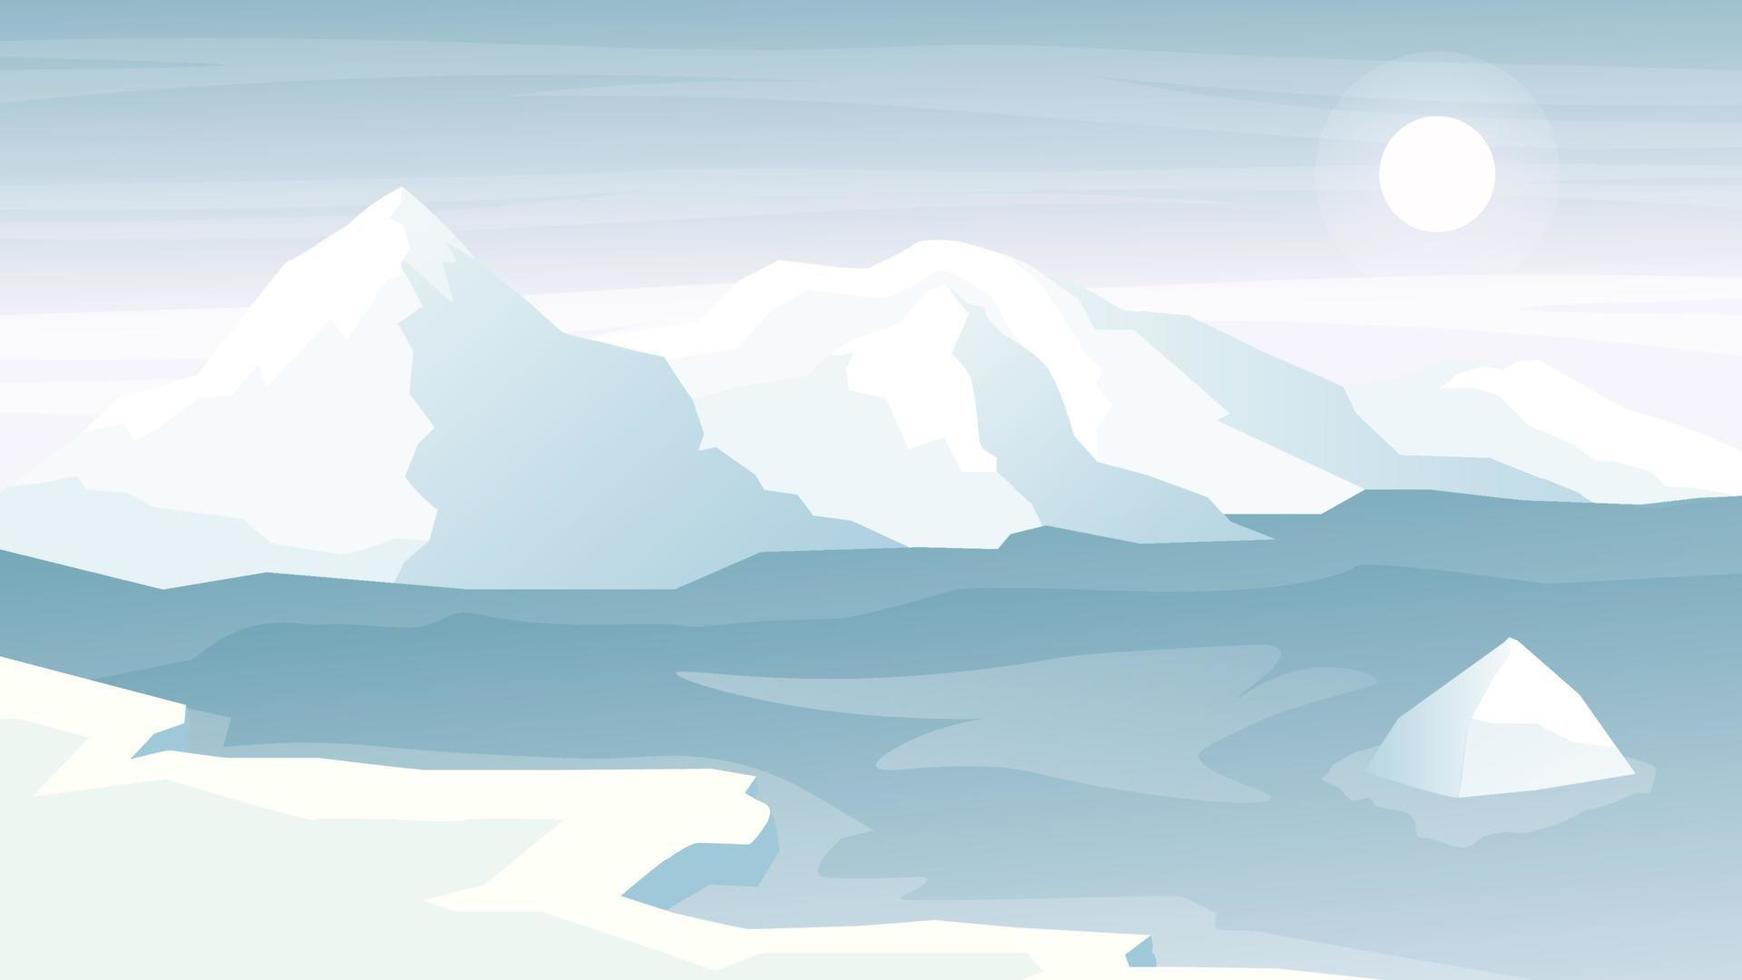 illustrazione di vettore del fondo del paesaggio della montagna dell'iceberg